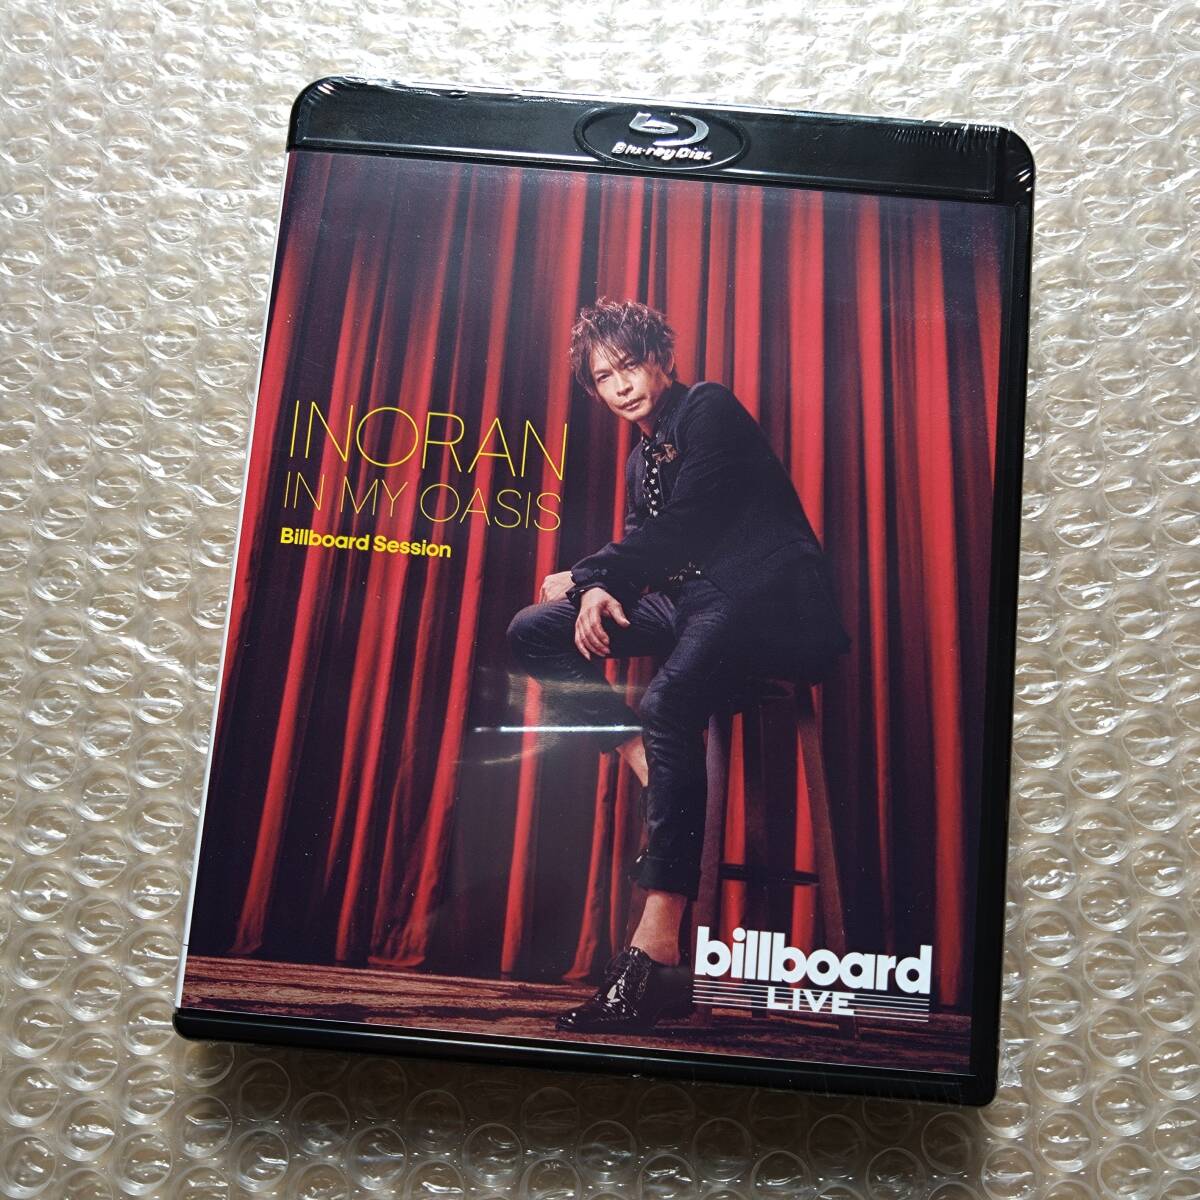 【新品未開封】 [Blu-ray] INORAN / IN MY OASIS Billboard Session ブルーレイ LUNA SEA_画像1